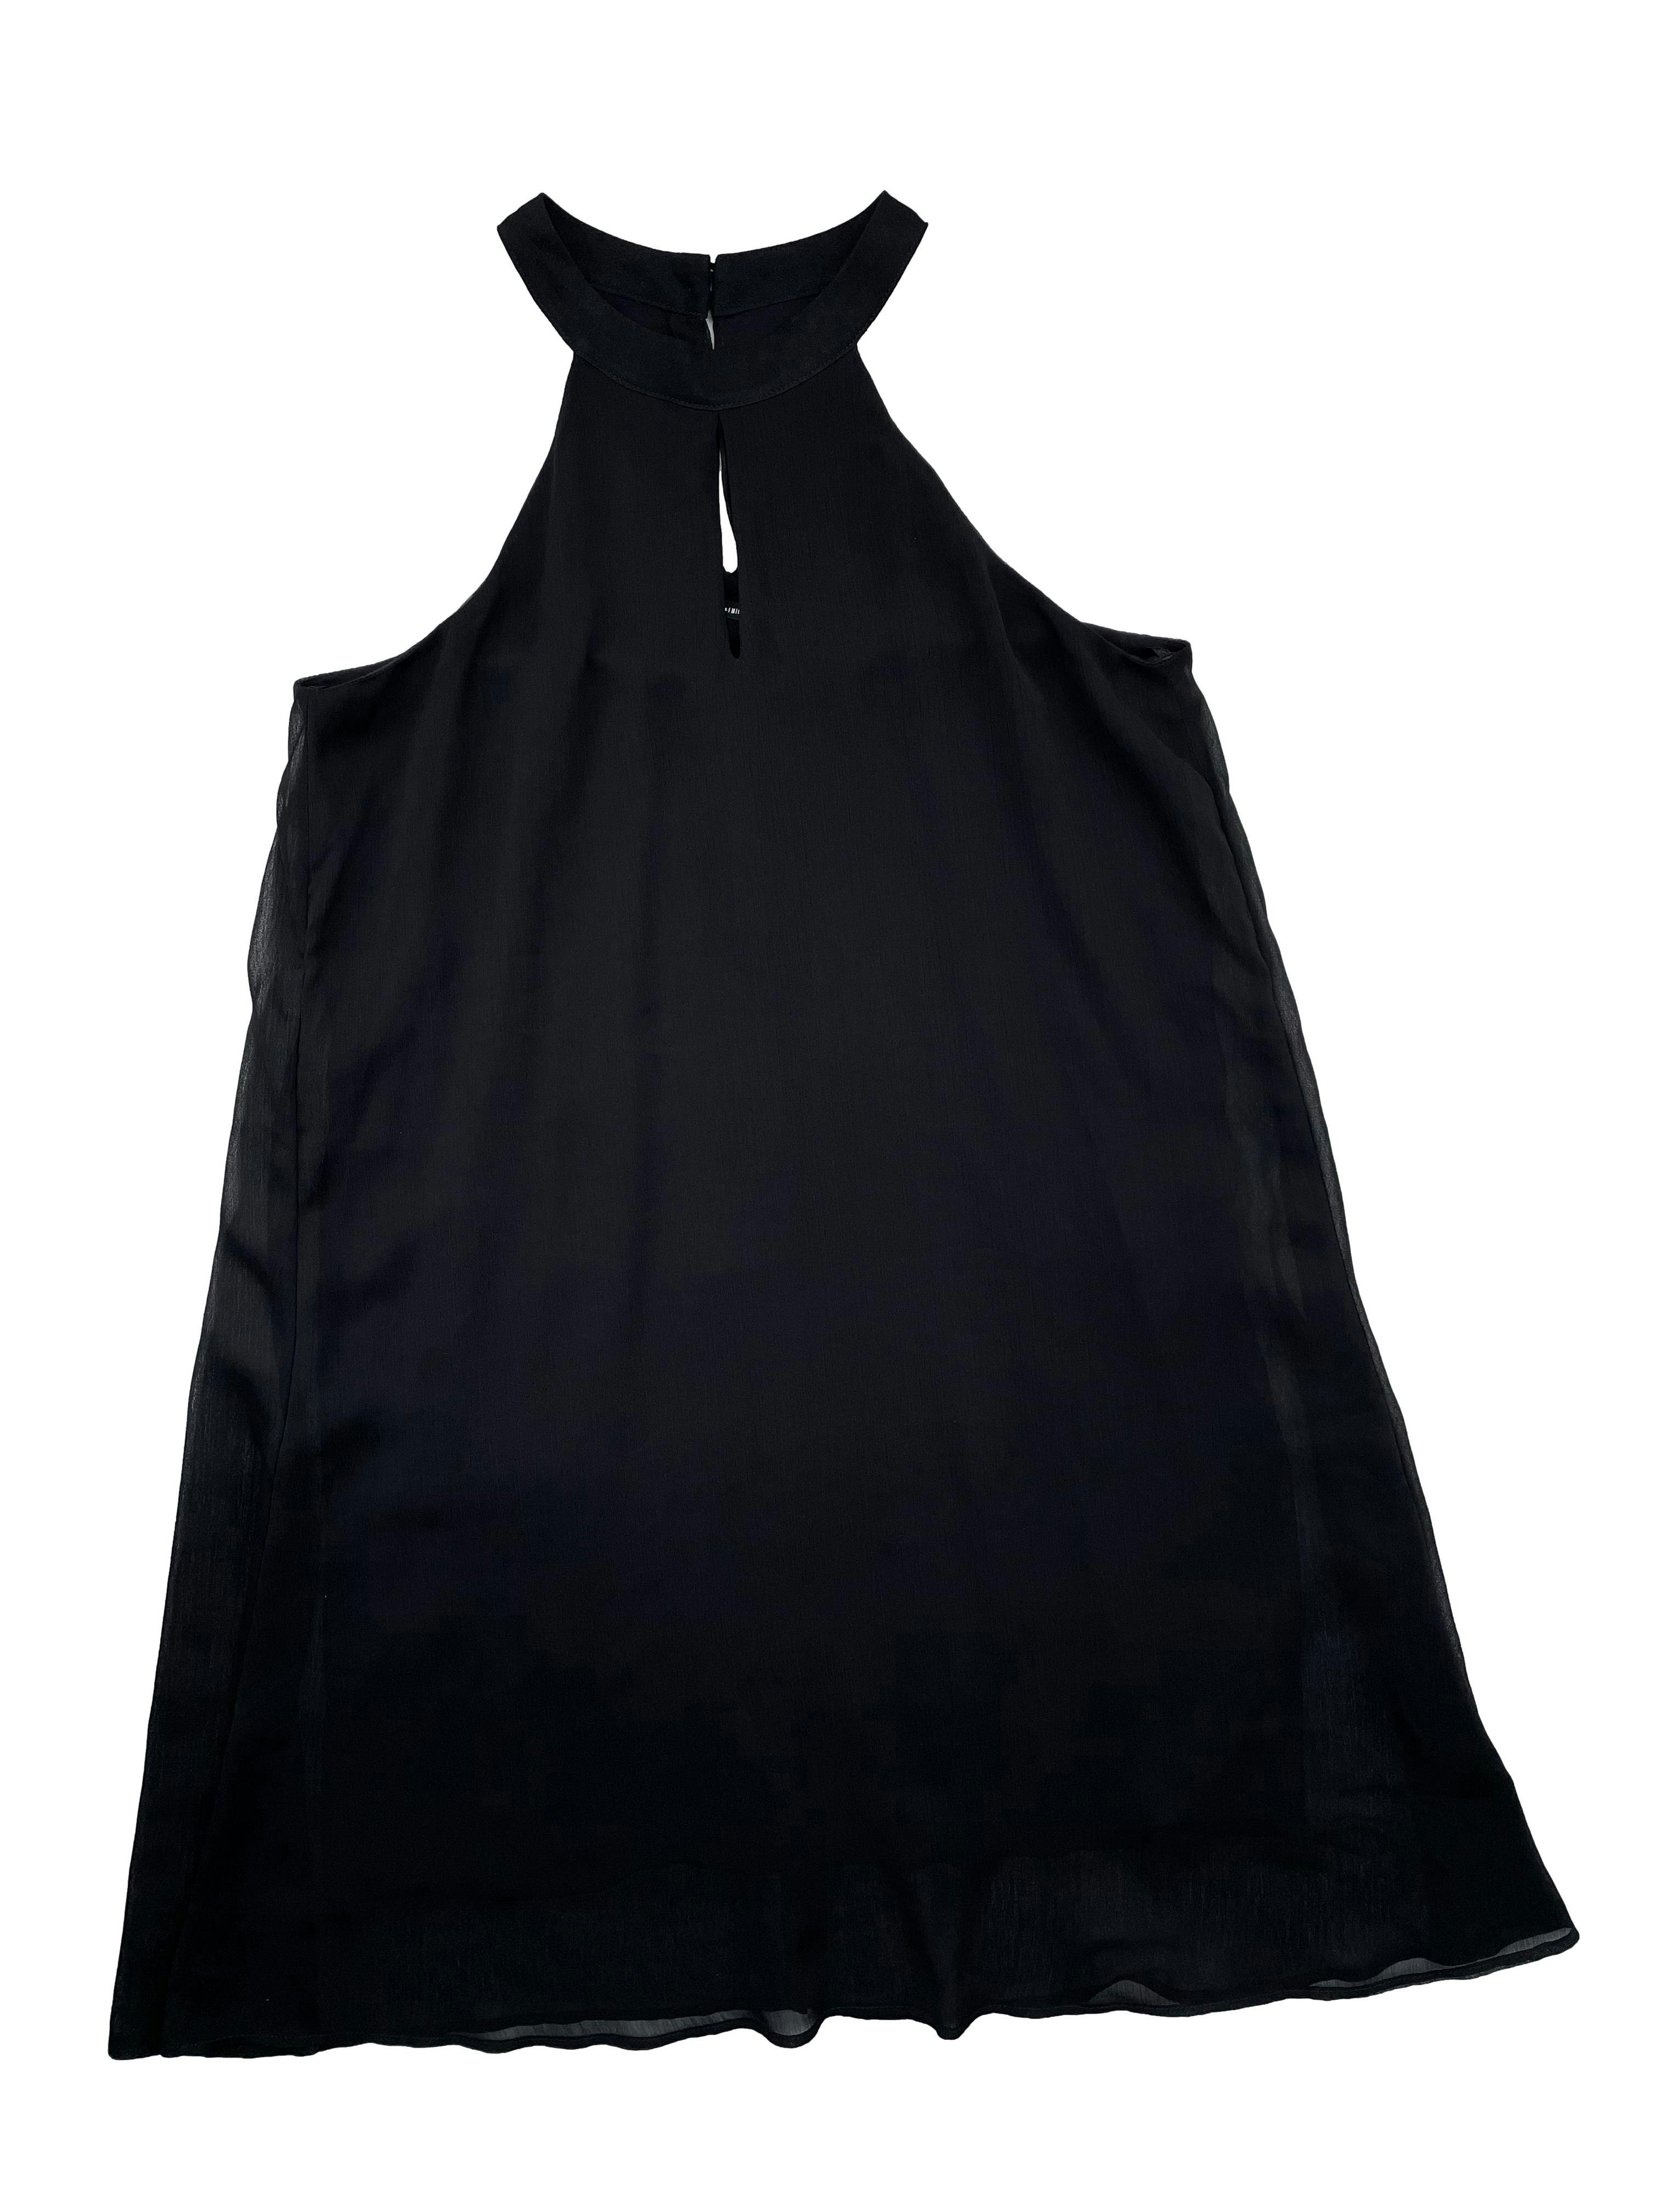 Vestido Marquis de gasa negra con forro, botón posterior en el cuelo, corte en A. Busto 100 cm Largo 90cm